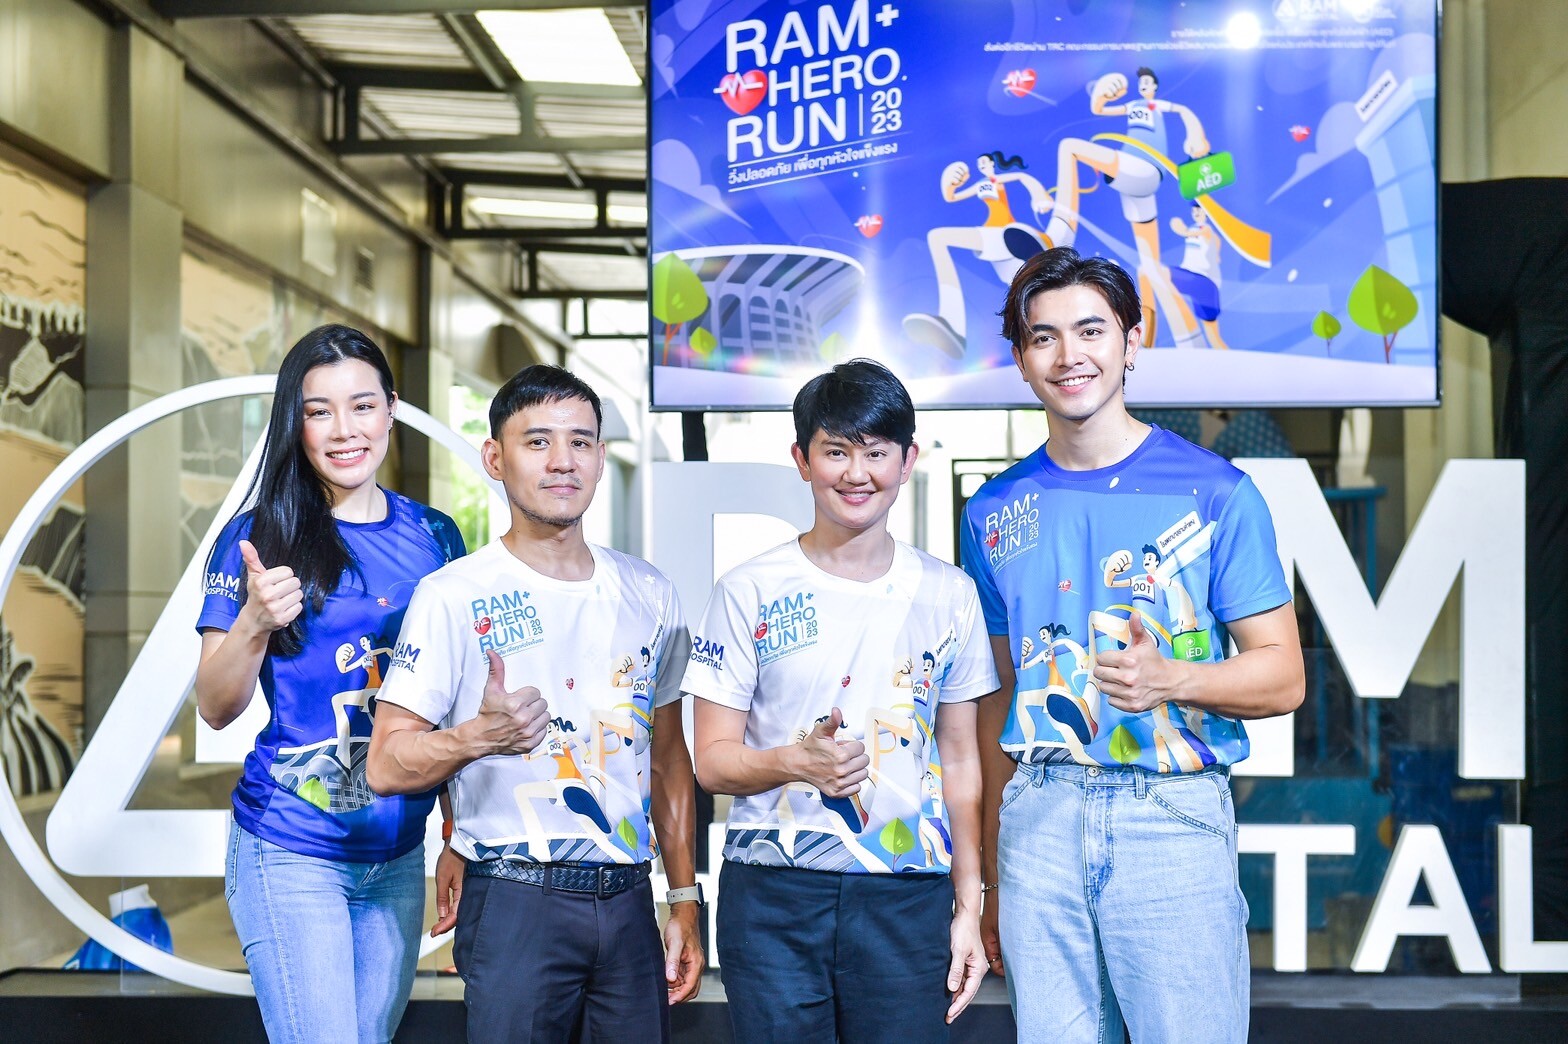 โรงพยาบาลรามคำแหง เตรียมพร้อมจัดการแข่งขันวิ่ง "Ram Hero Run 2023" วิ่งปลอดภัยเพื่อทุกหัวใจแข็งแรง